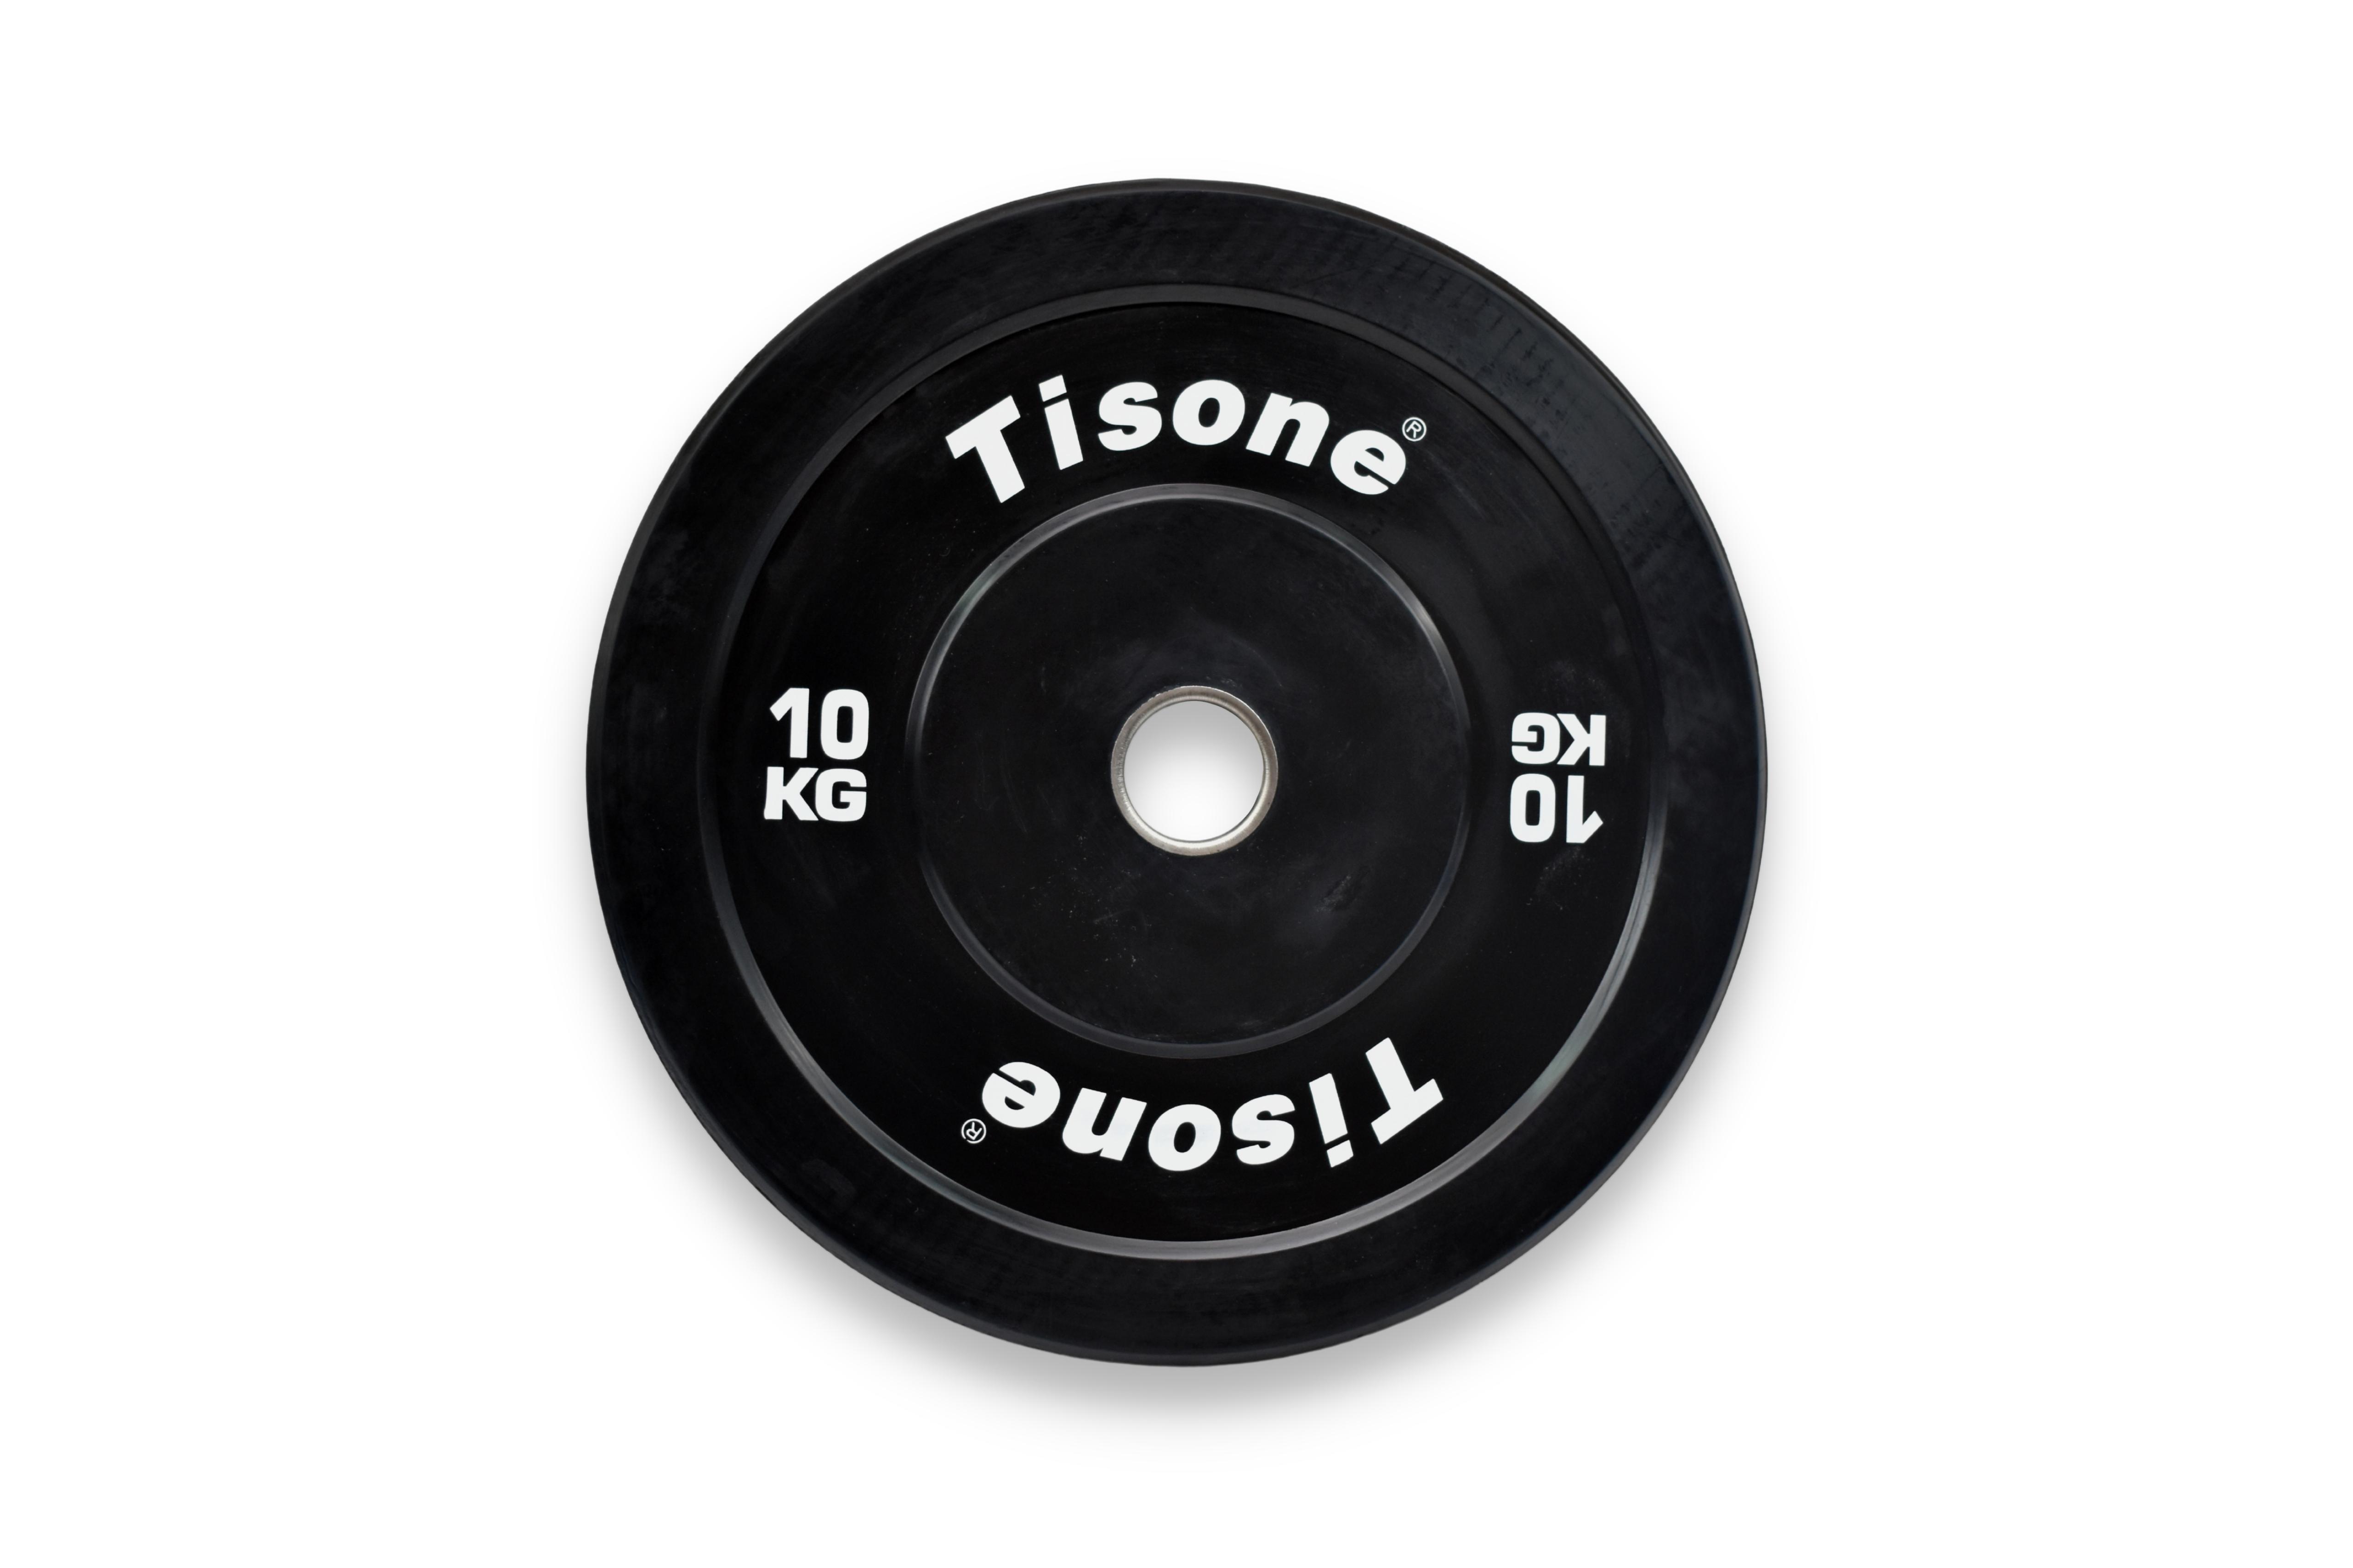 Disco bumper olímpico Tisone 10 kg